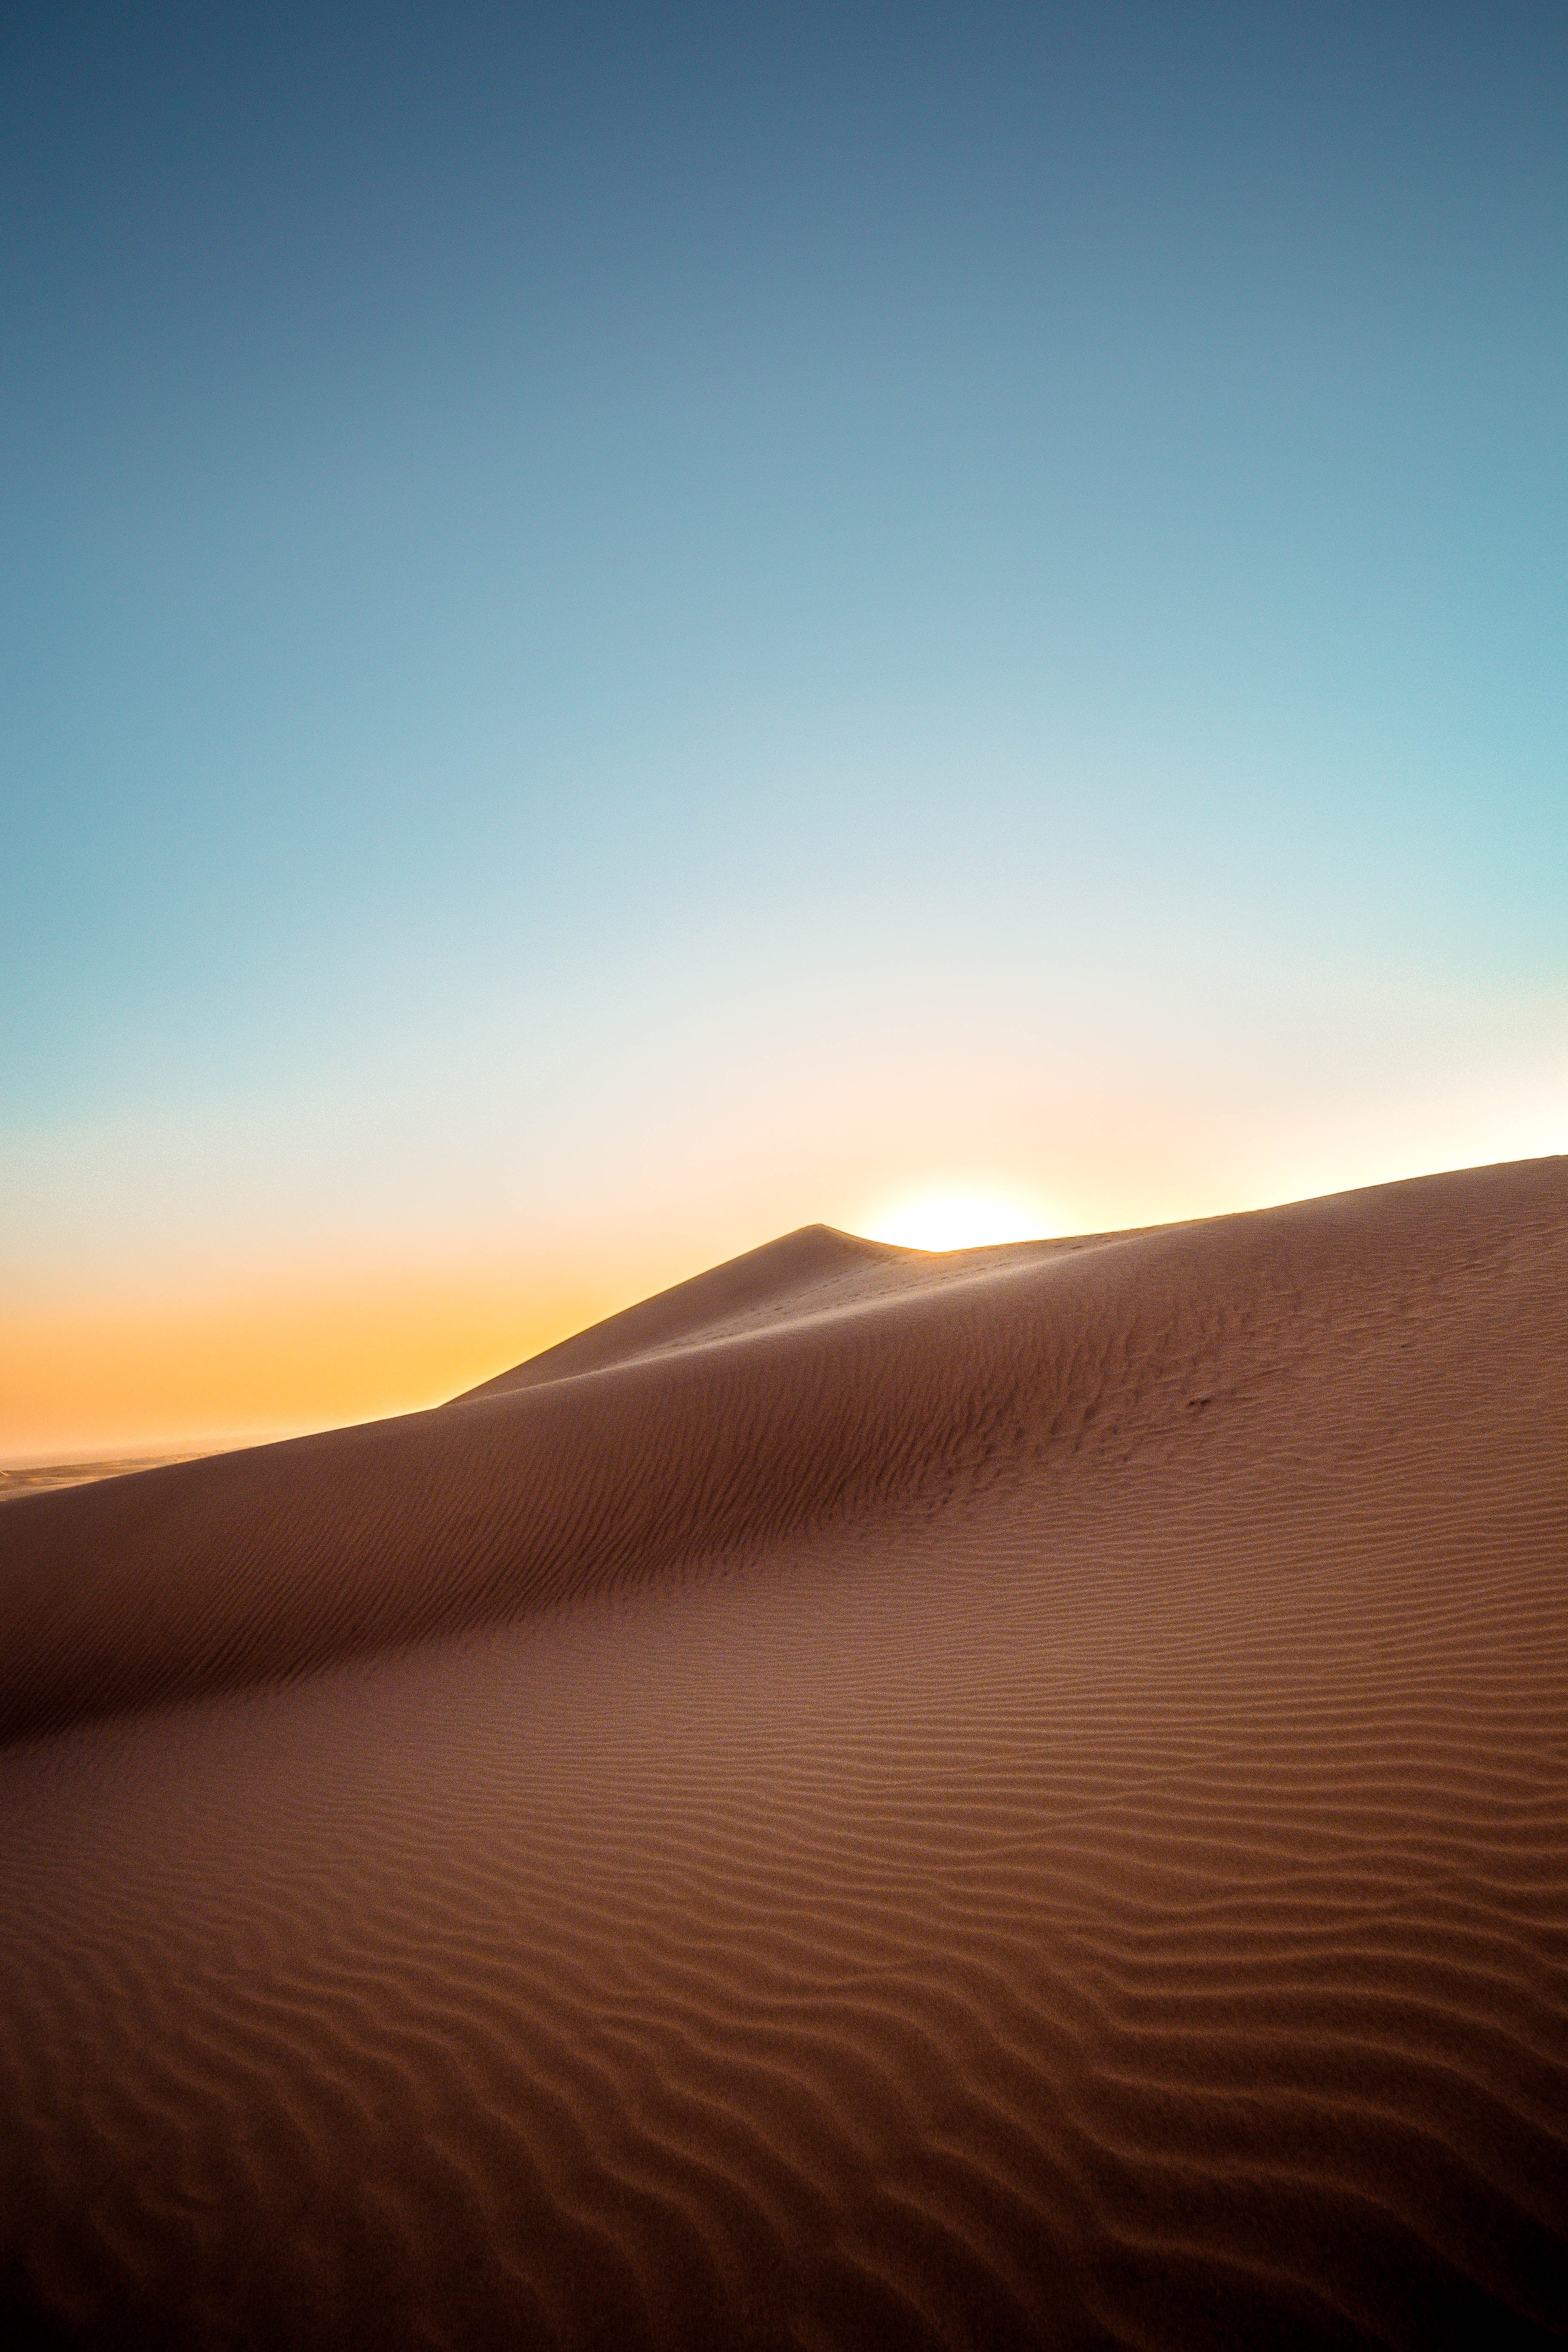 Desert. Wallpaper for any iPhone